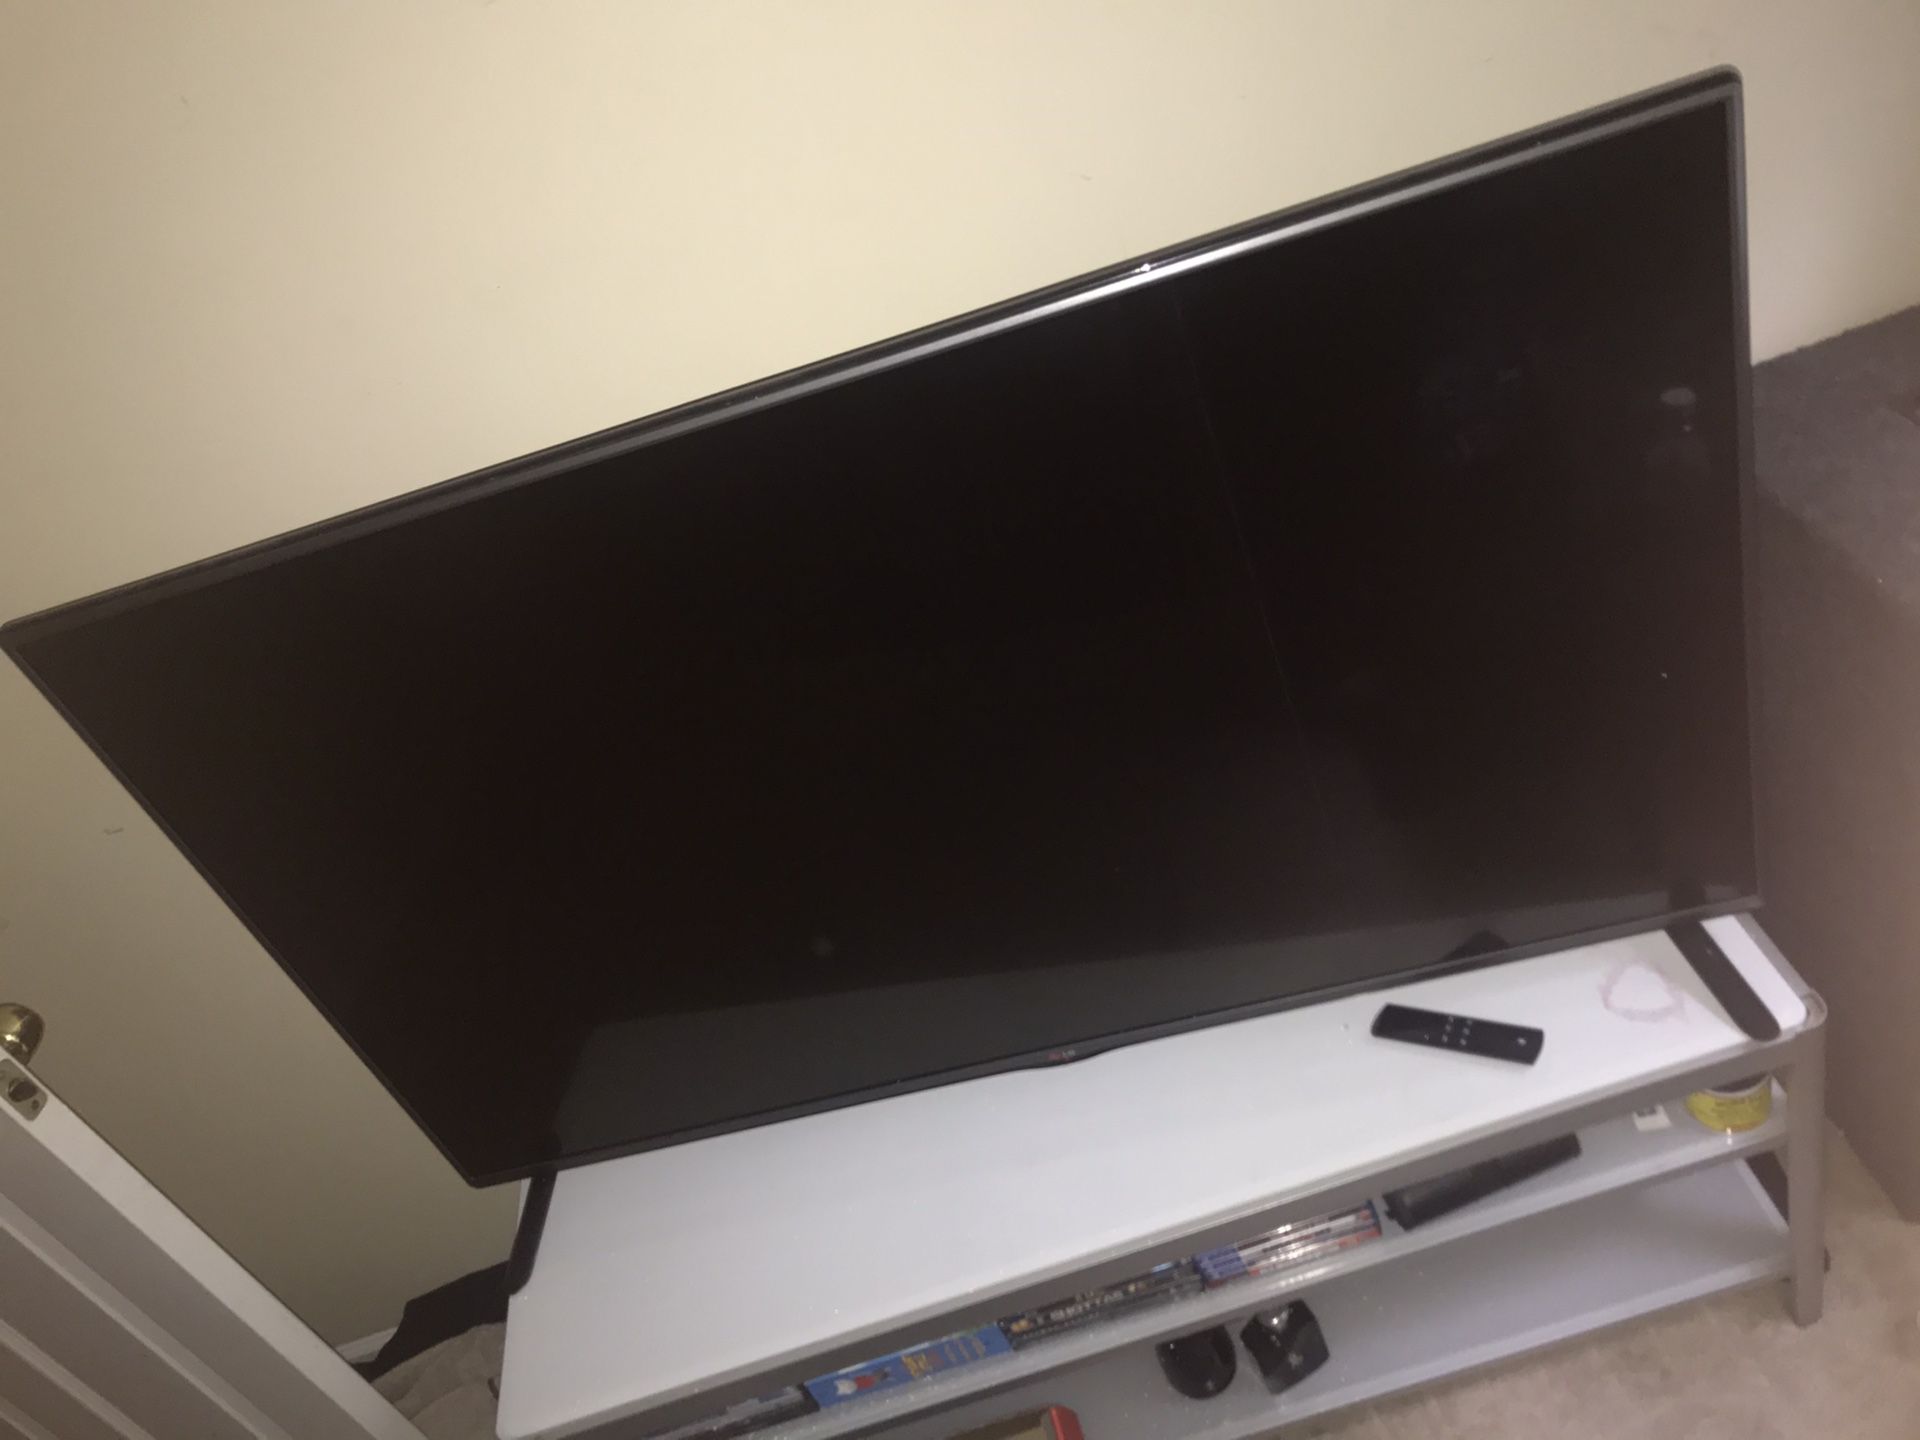 55 inch LG TV